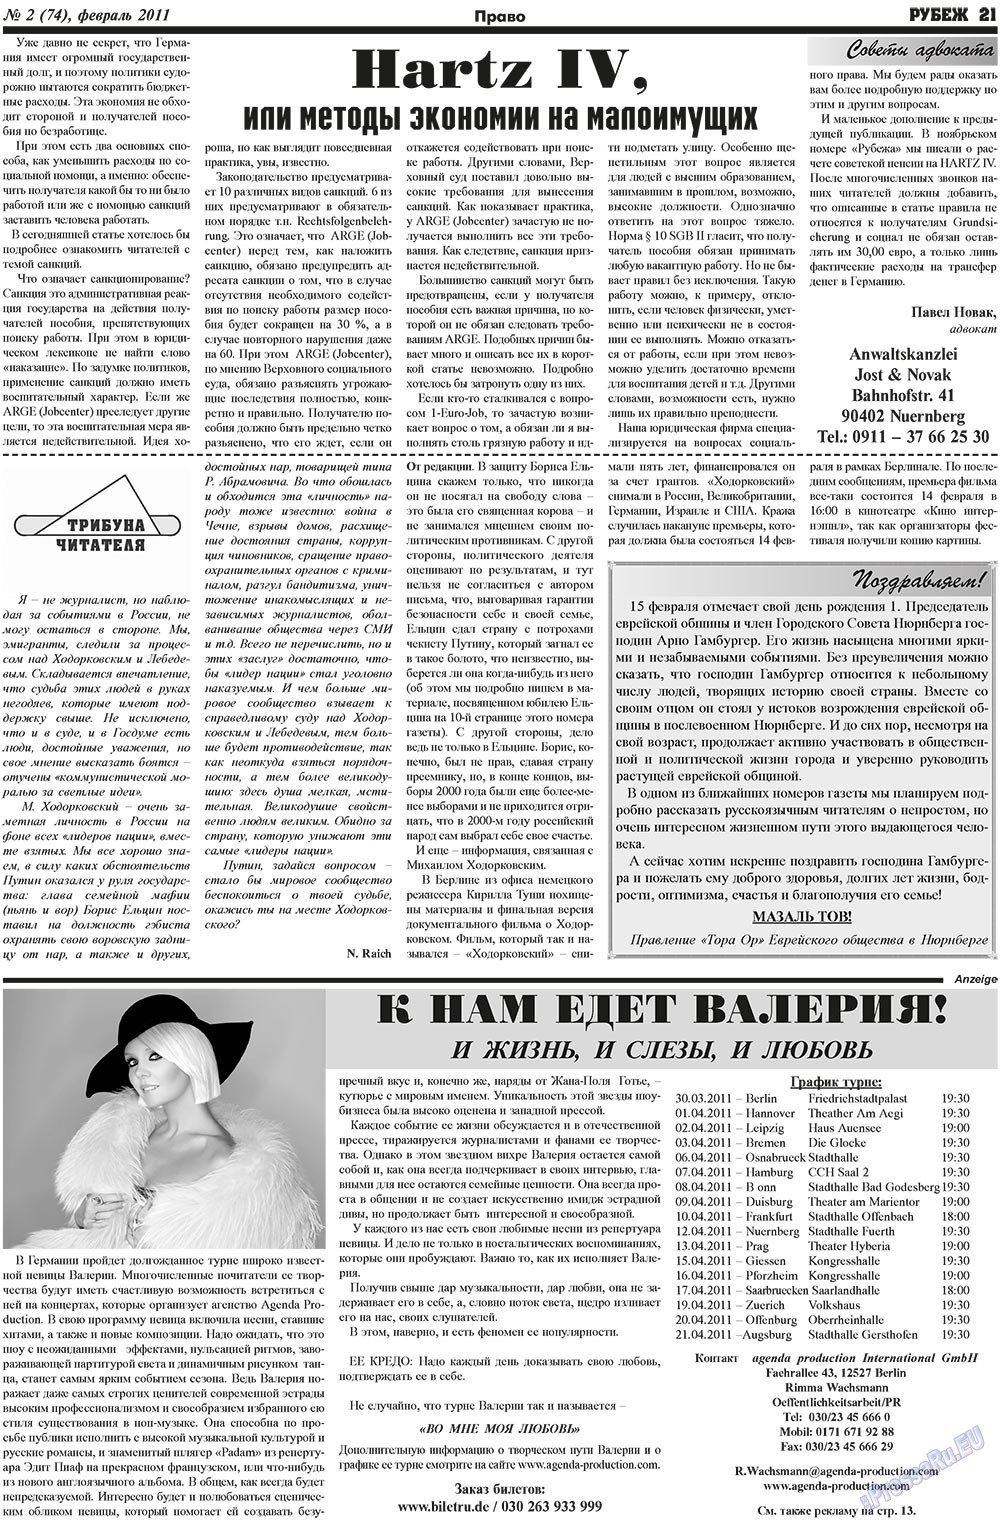 Рубеж (газета). 2011 год, номер 2, стр. 21